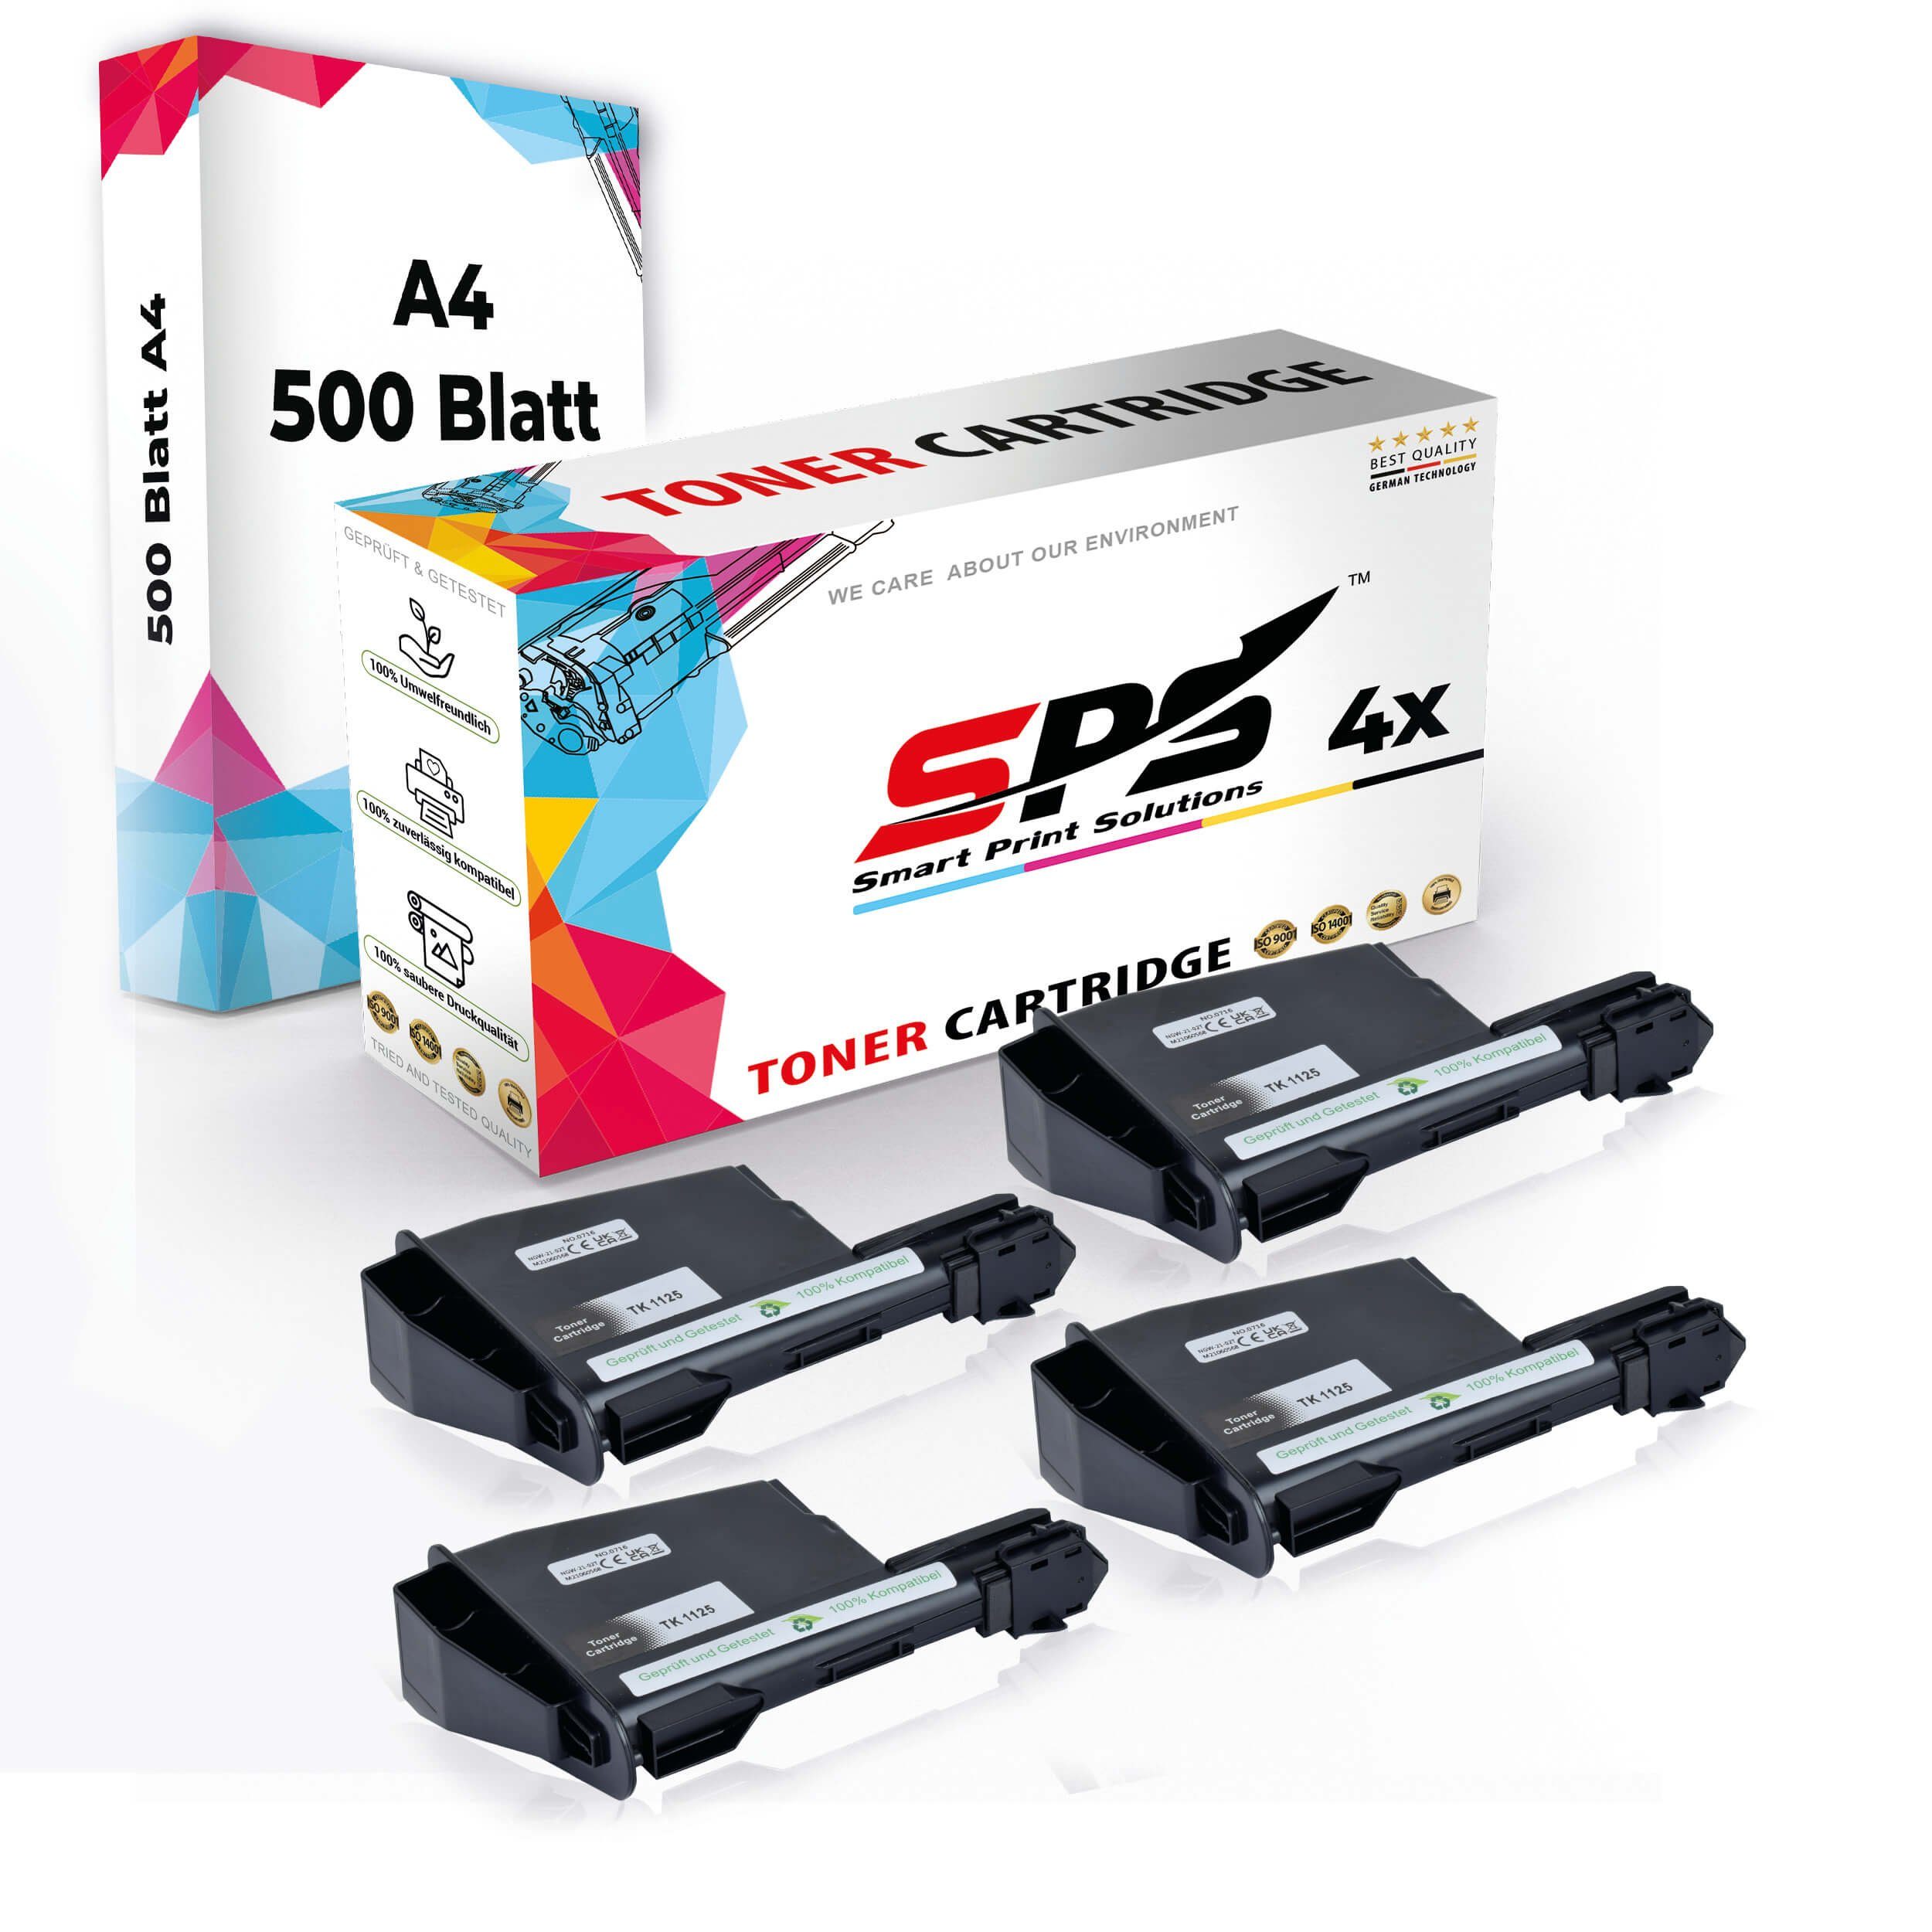 + 4x Multipack A4 Toner,1x A4 Druckerpapier) Pack, Tonerkartusche Druckerpapier Set SPS 4x Kompatibel, (4er